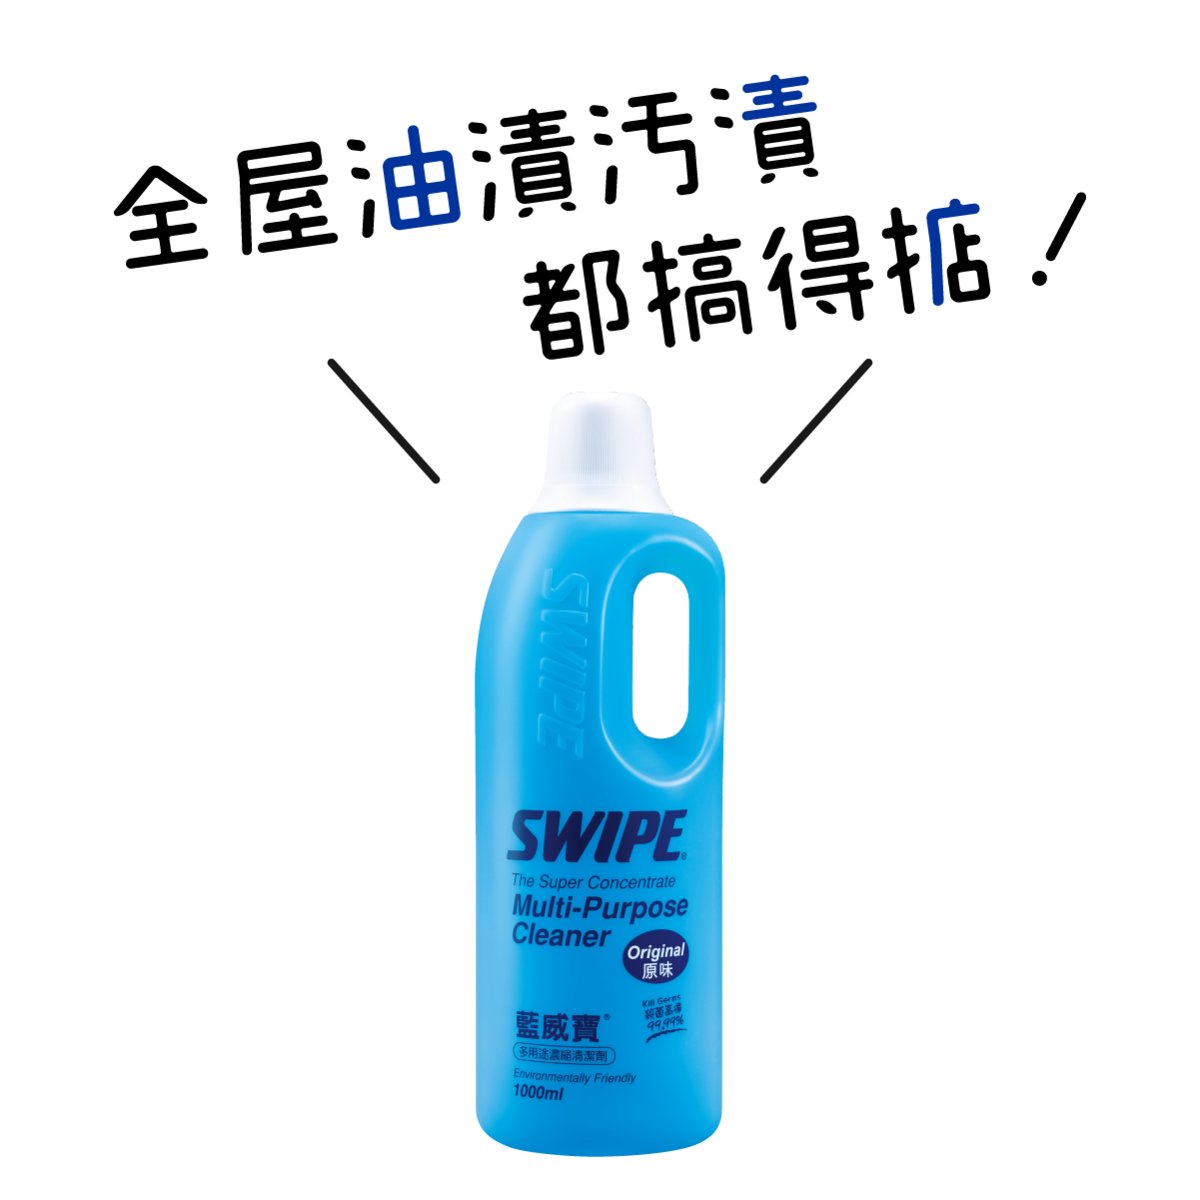 藍威寶多用途濃縮清潔劑1L (原味)